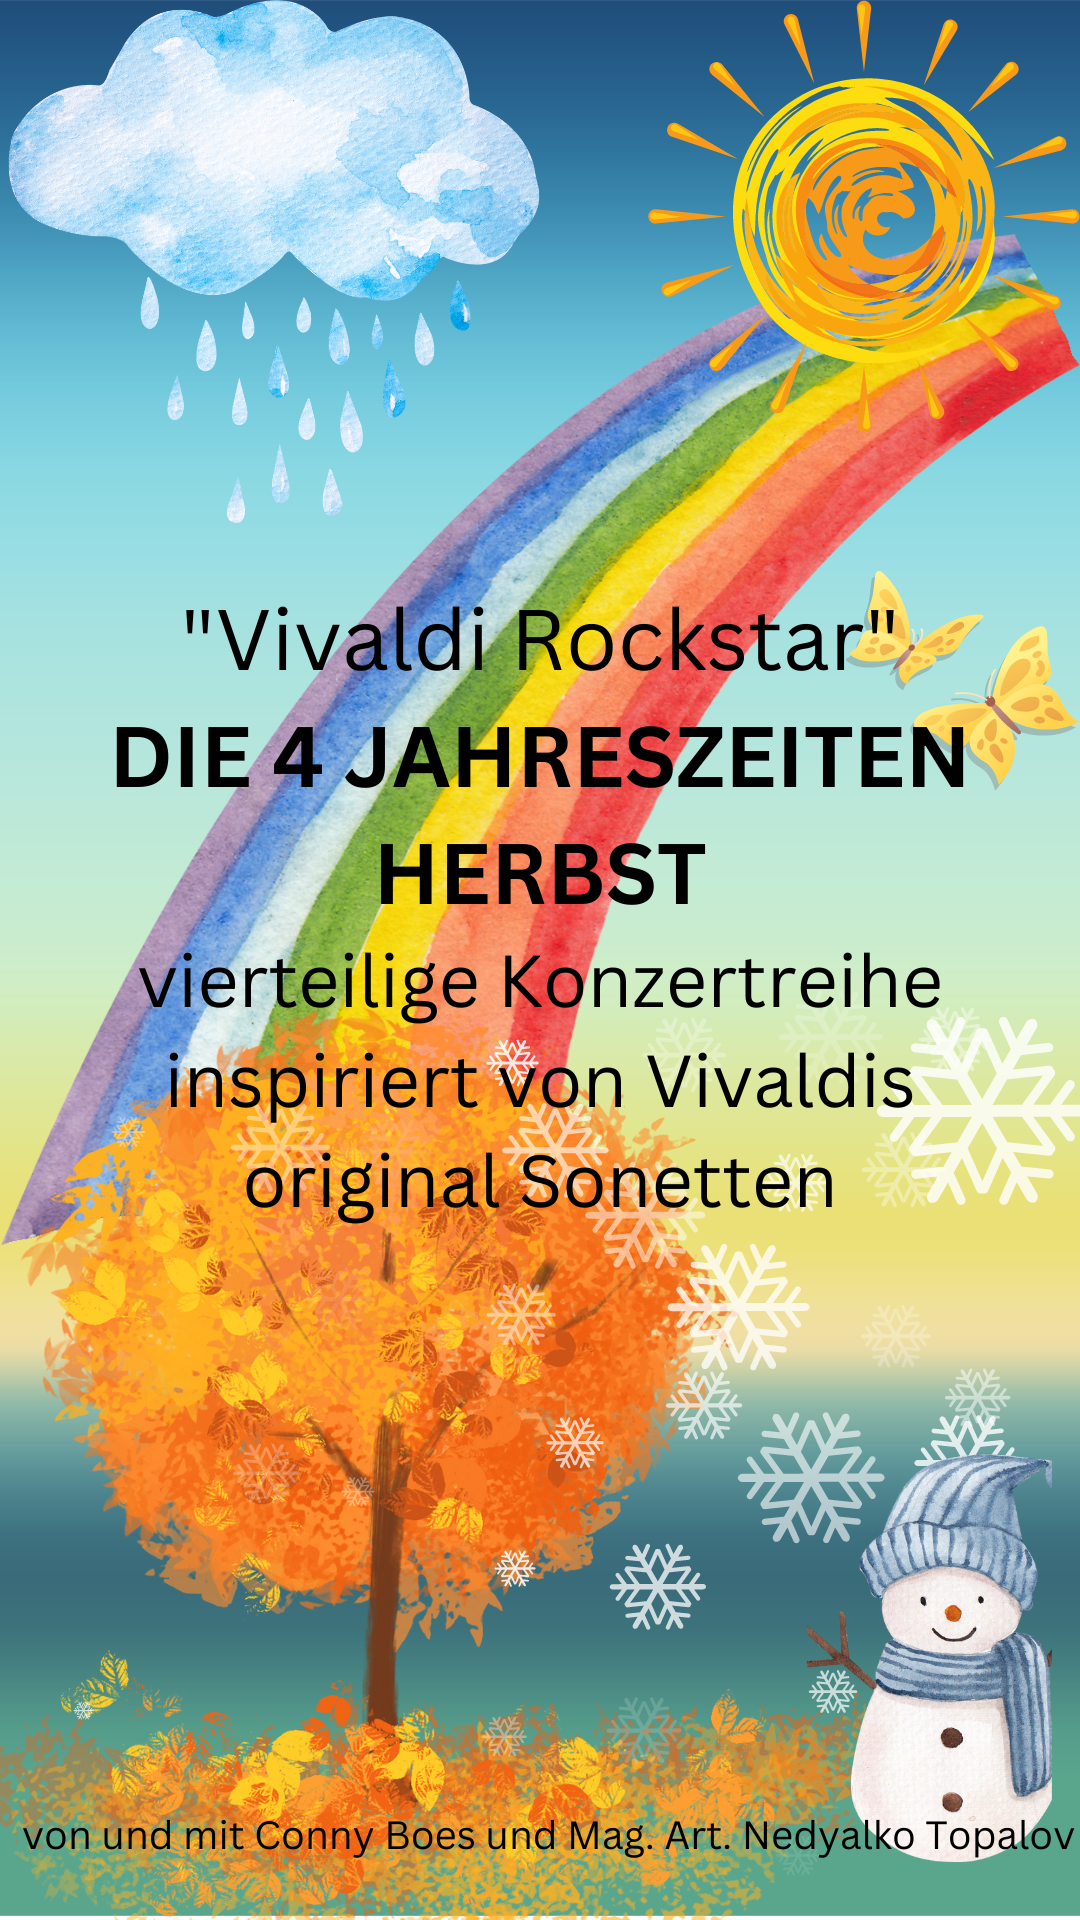 Vivaldi Rockstar "Die vier Jahreszeiten"  - Herbst